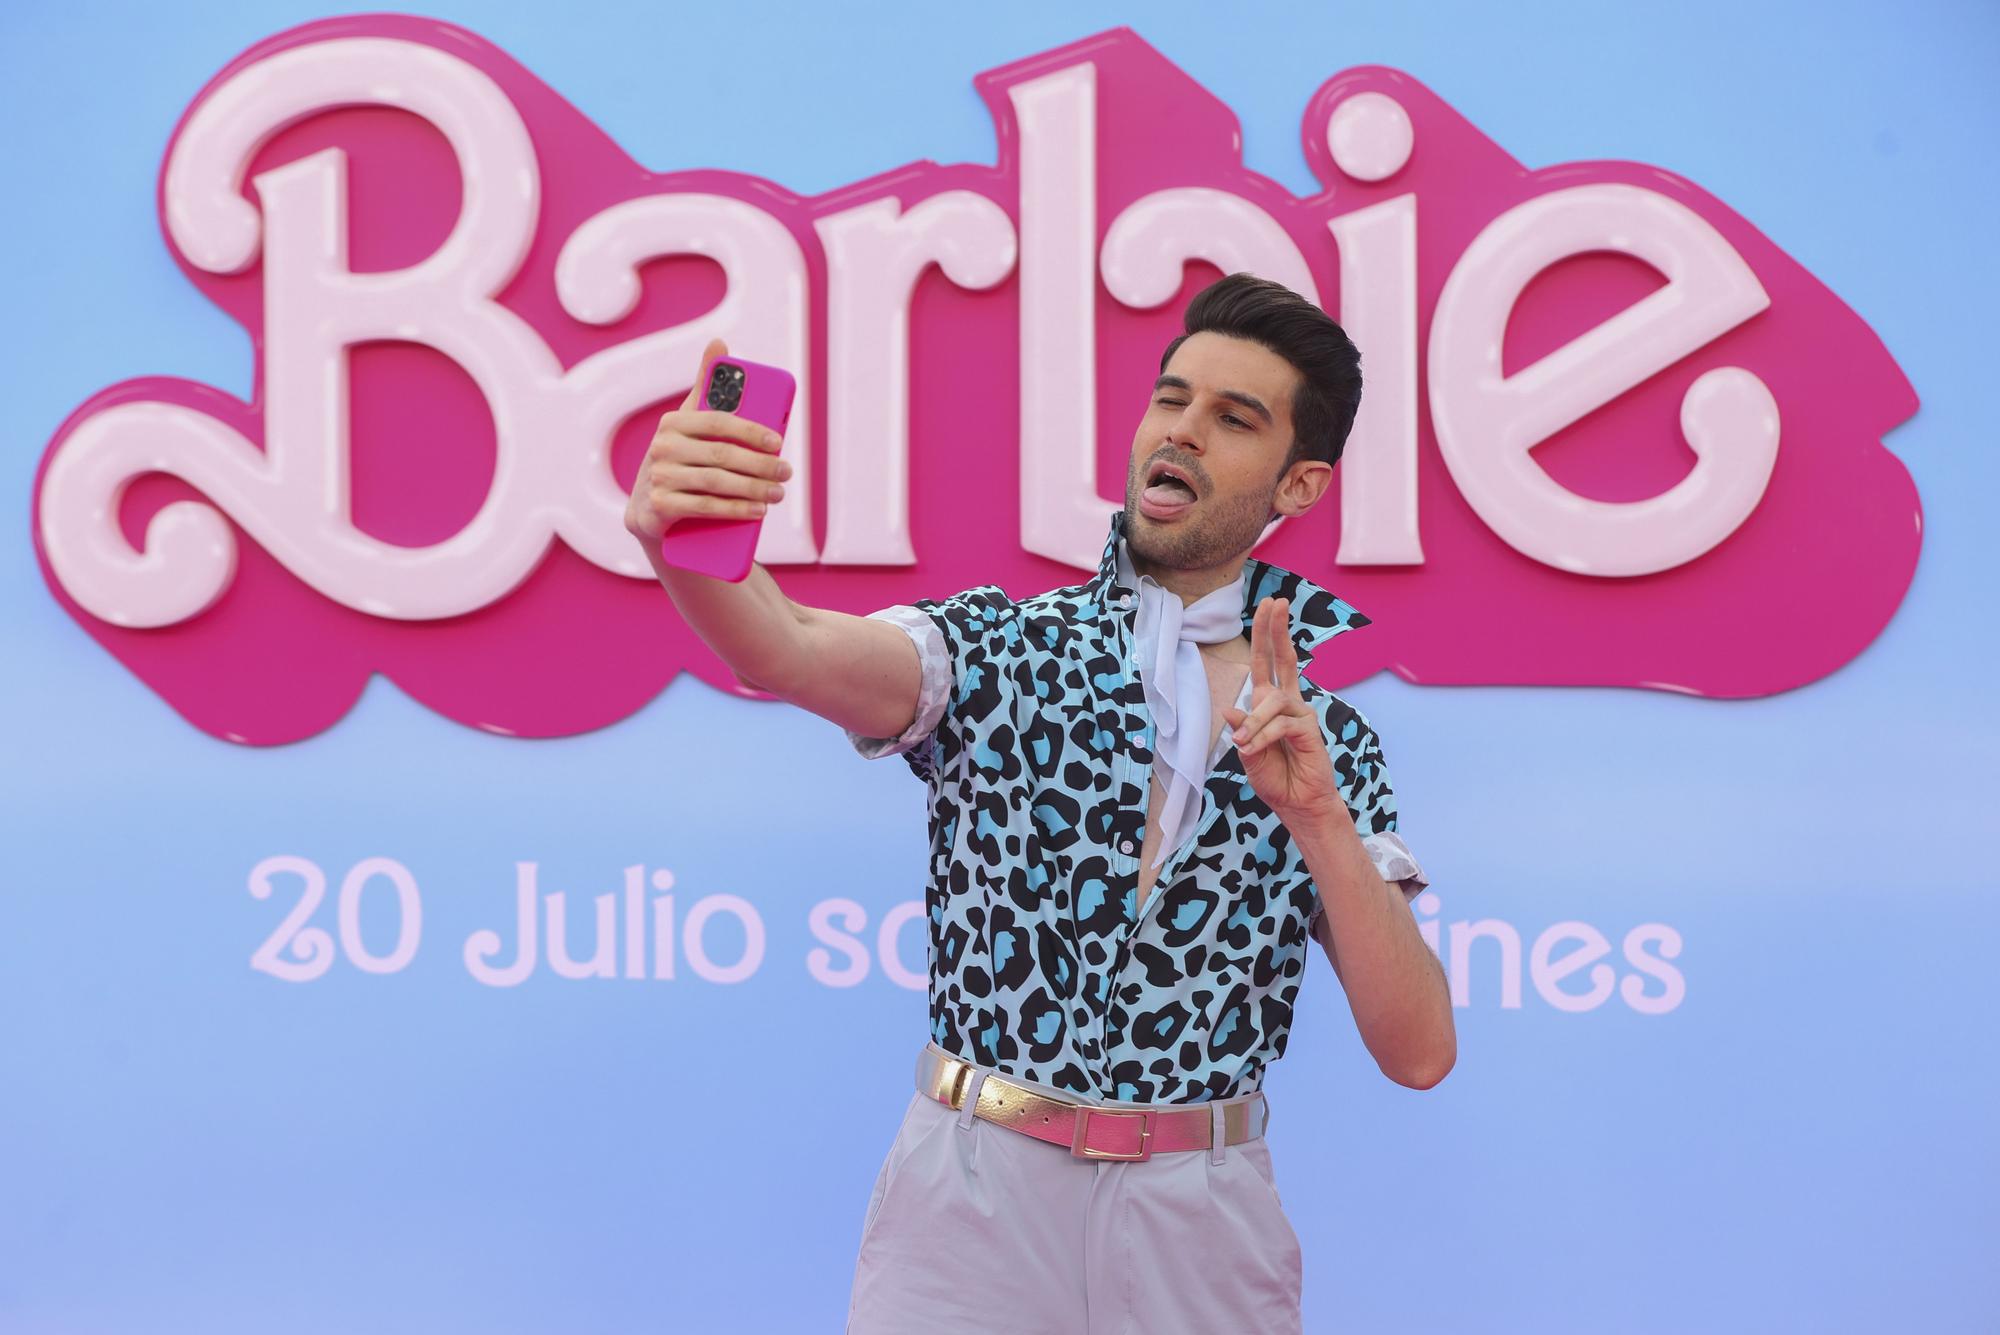 El rosa s'imposa a l'estrena de 'Barbie' a Madrid